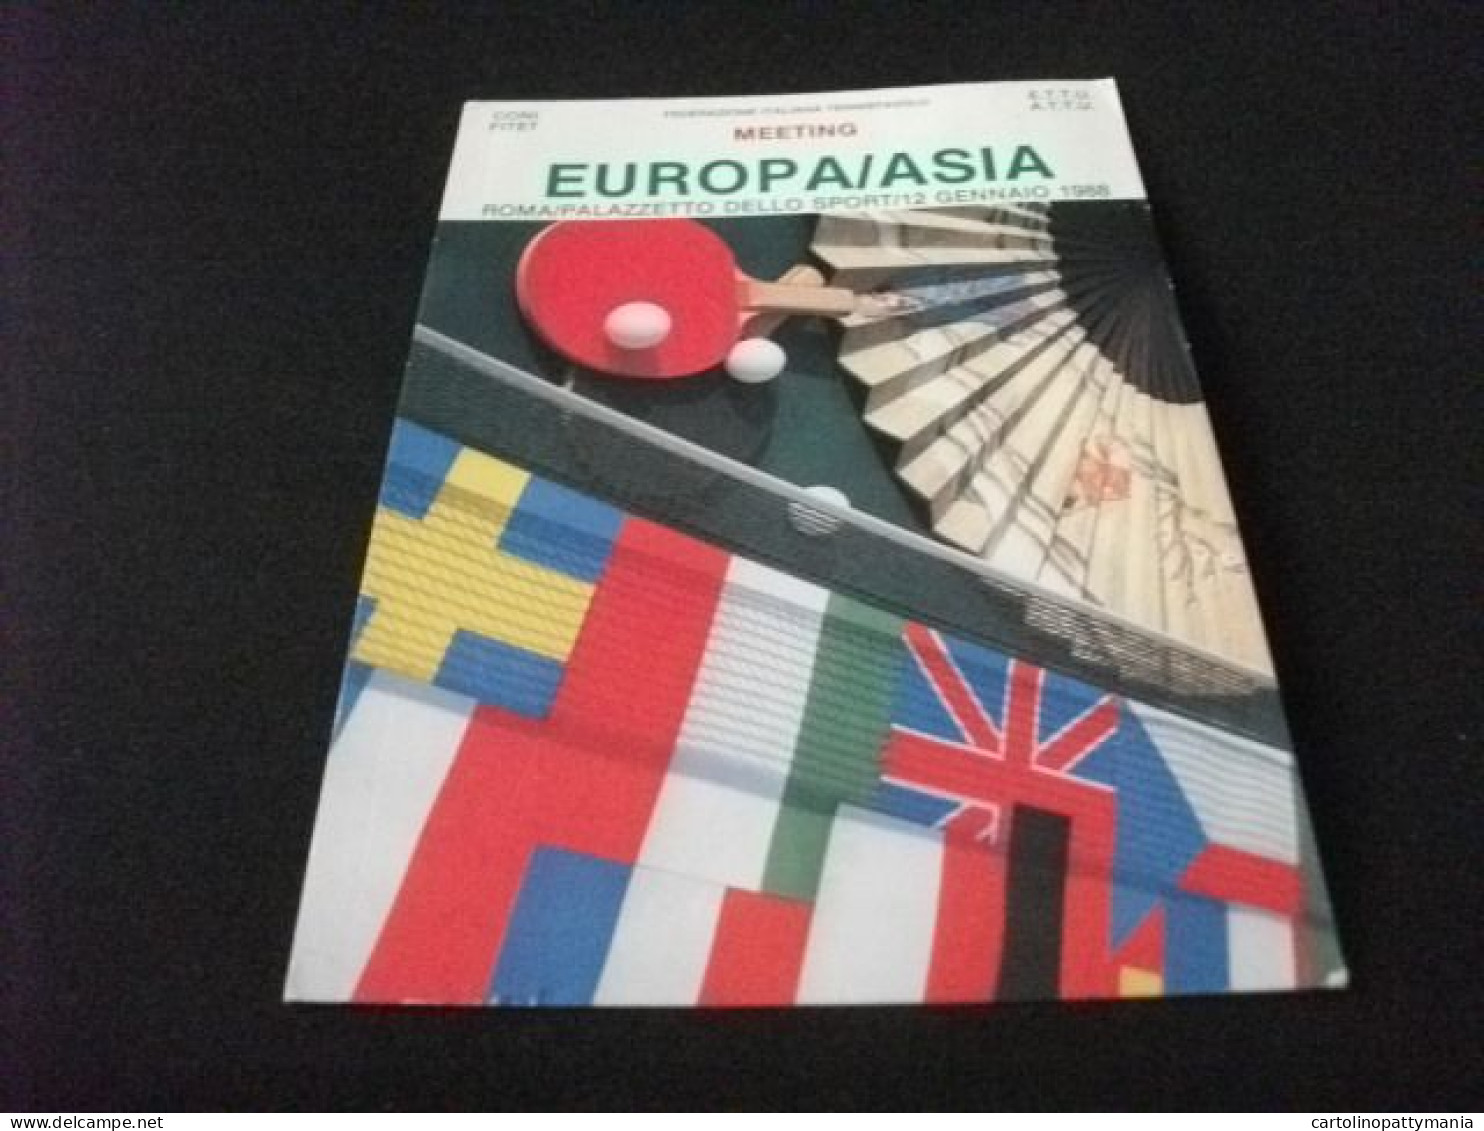 EUROPA/ASIA MEETING ROMA PALAZZETTO DELLO SPORT 1988 TENNIS DA TAVOLO FEDERAZIONE ITALIANA TENNISTAVOLO - Tafeltennis